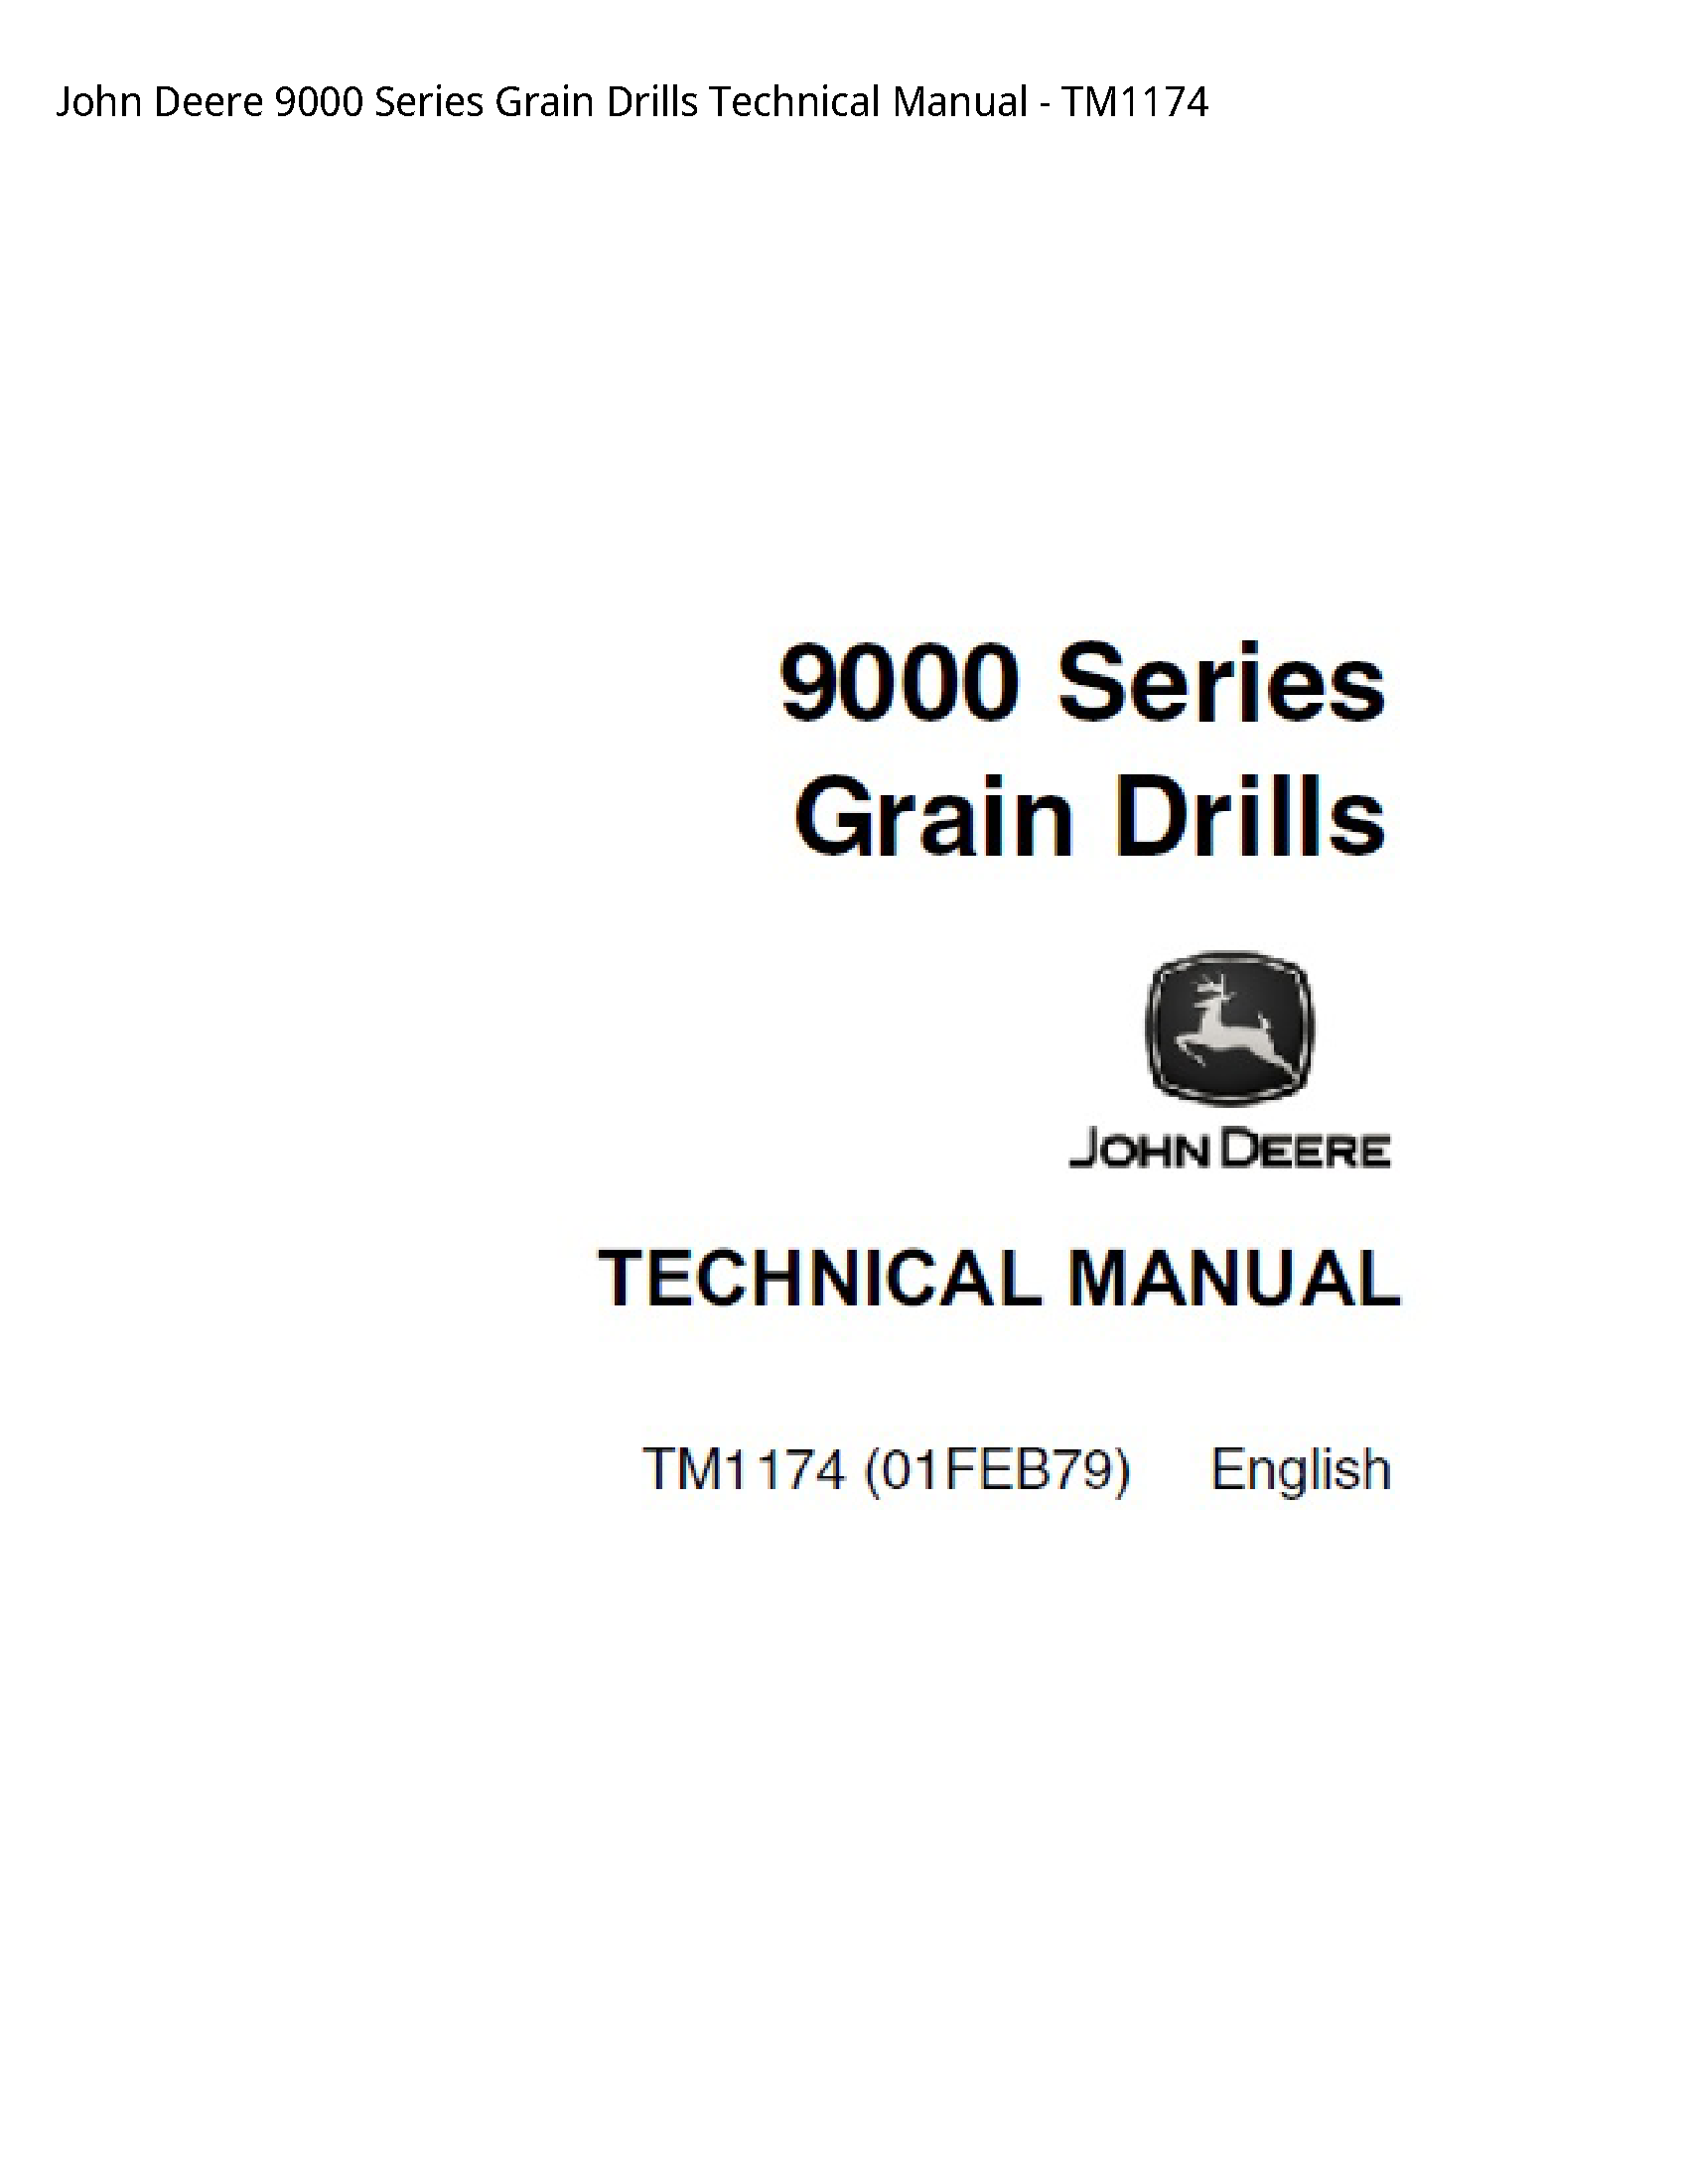 John Deere 9000 Series Grain Drills Technical manual